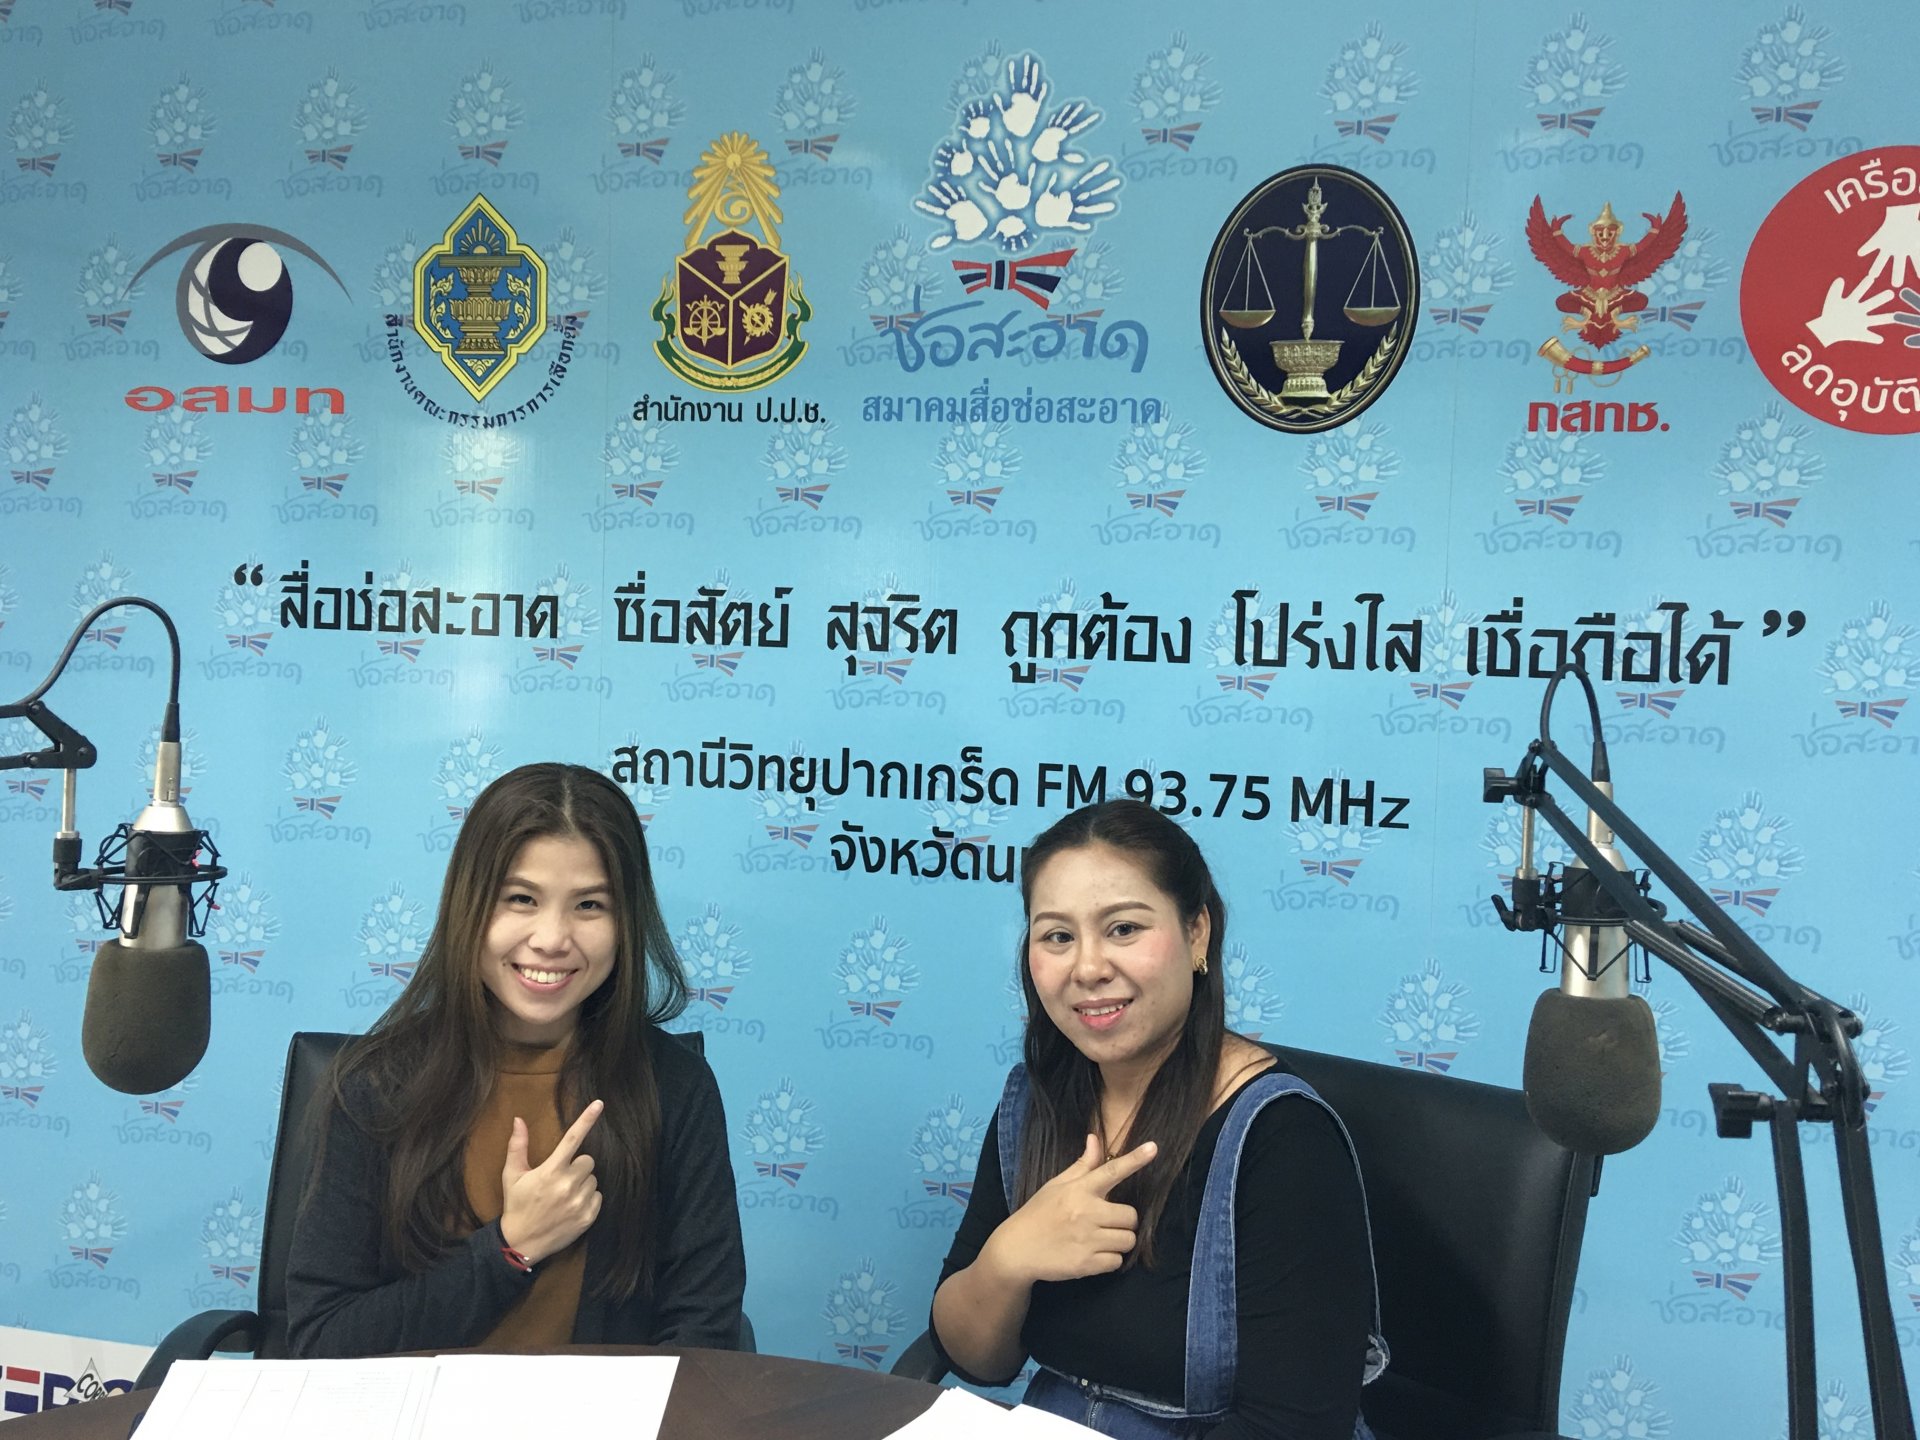 รายการ “คนไทยไม่ทนต่อการทุจริต” วันเสาร์ที่ 23 มกราคม 2564 เวลา 18.30-19.00 น.